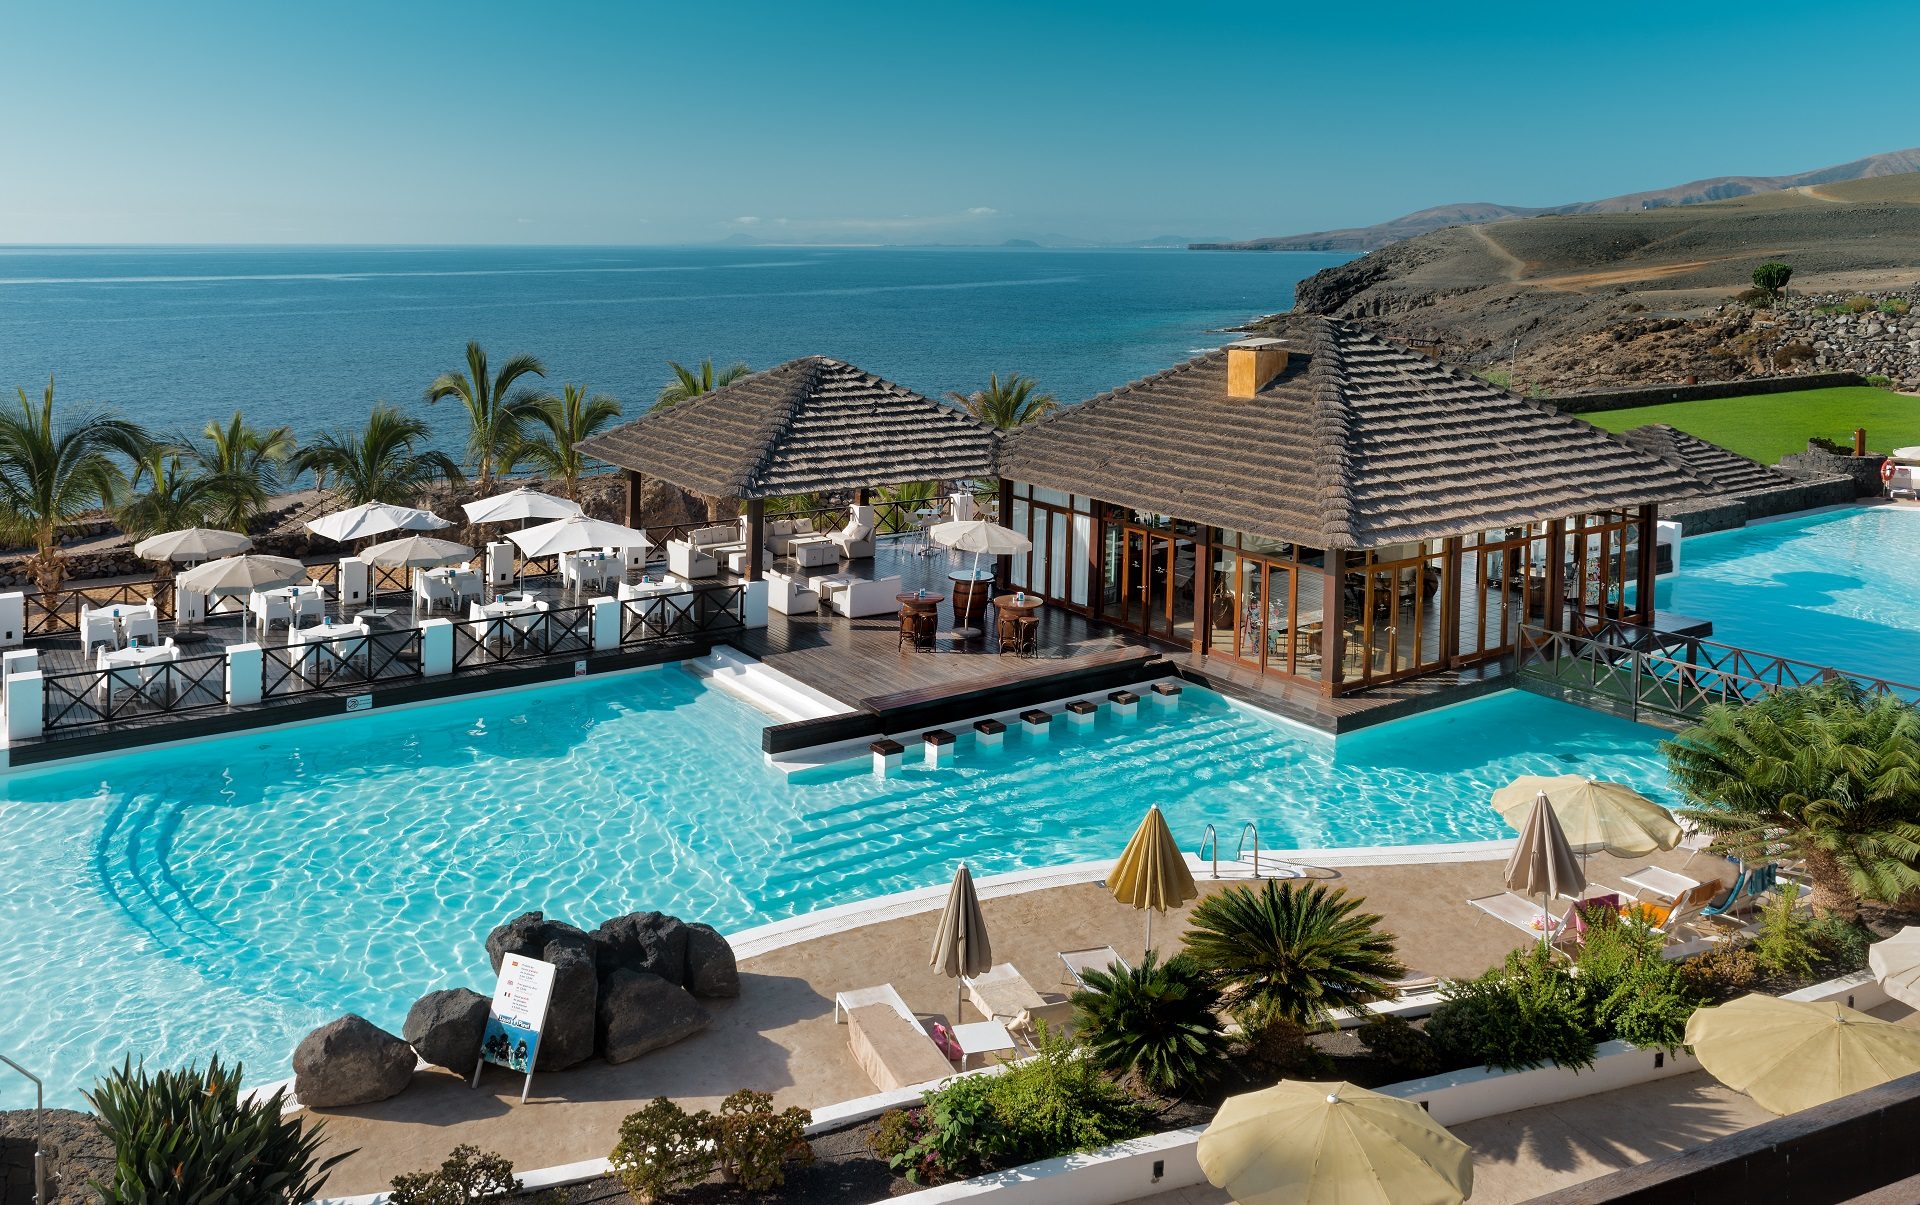 Hotele na Lanzarote, wakacje na Wyspach Kanaryjskich, wczasy na Kanarach, tylko dla dorosłych, hotele bez dzieci